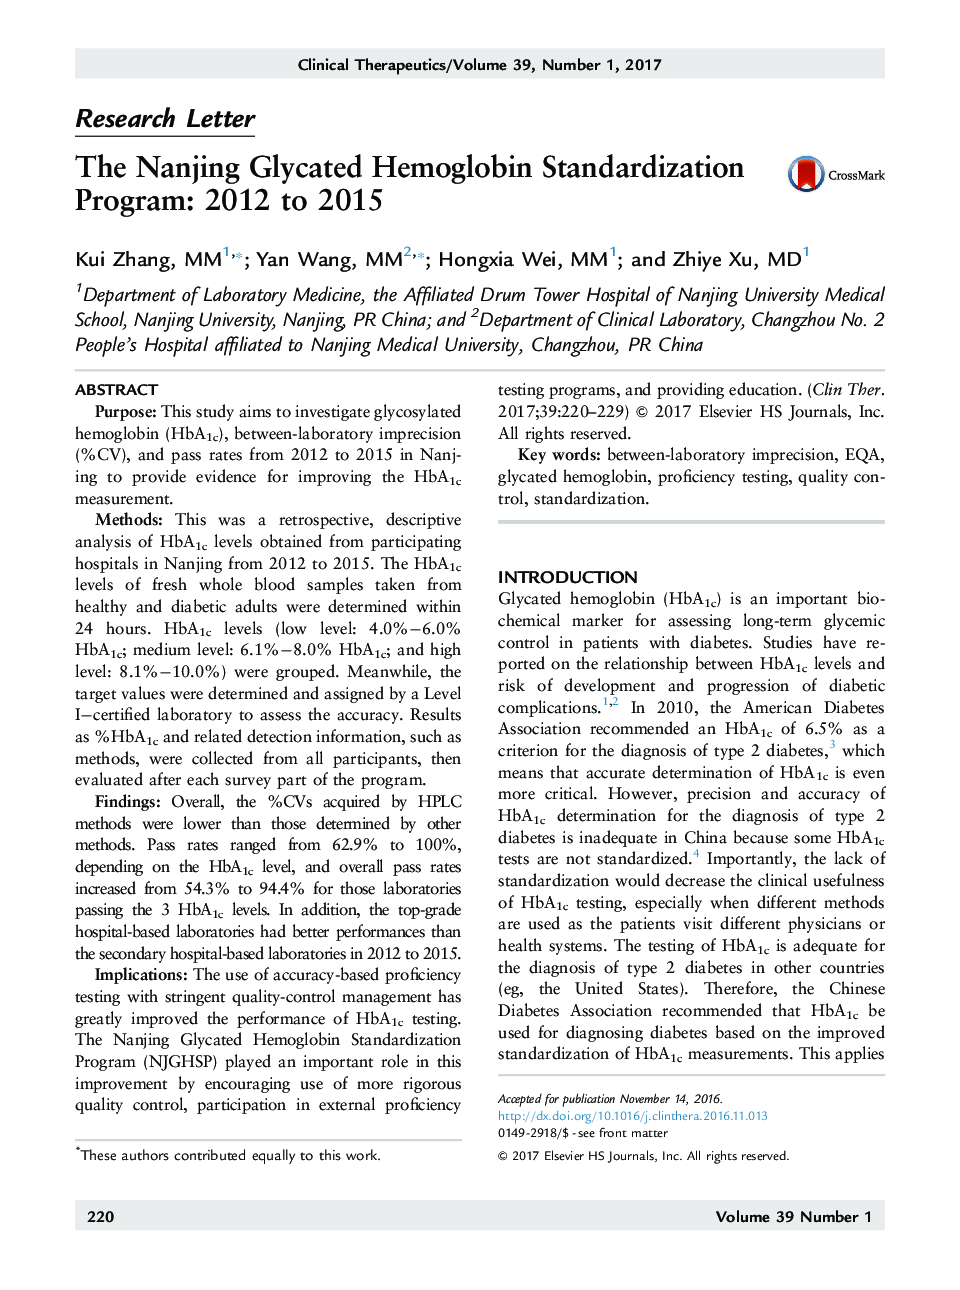 برنامه استاندارد سازی هموگلوبین گلیساید نانجینگ: 2012 تا 2015 